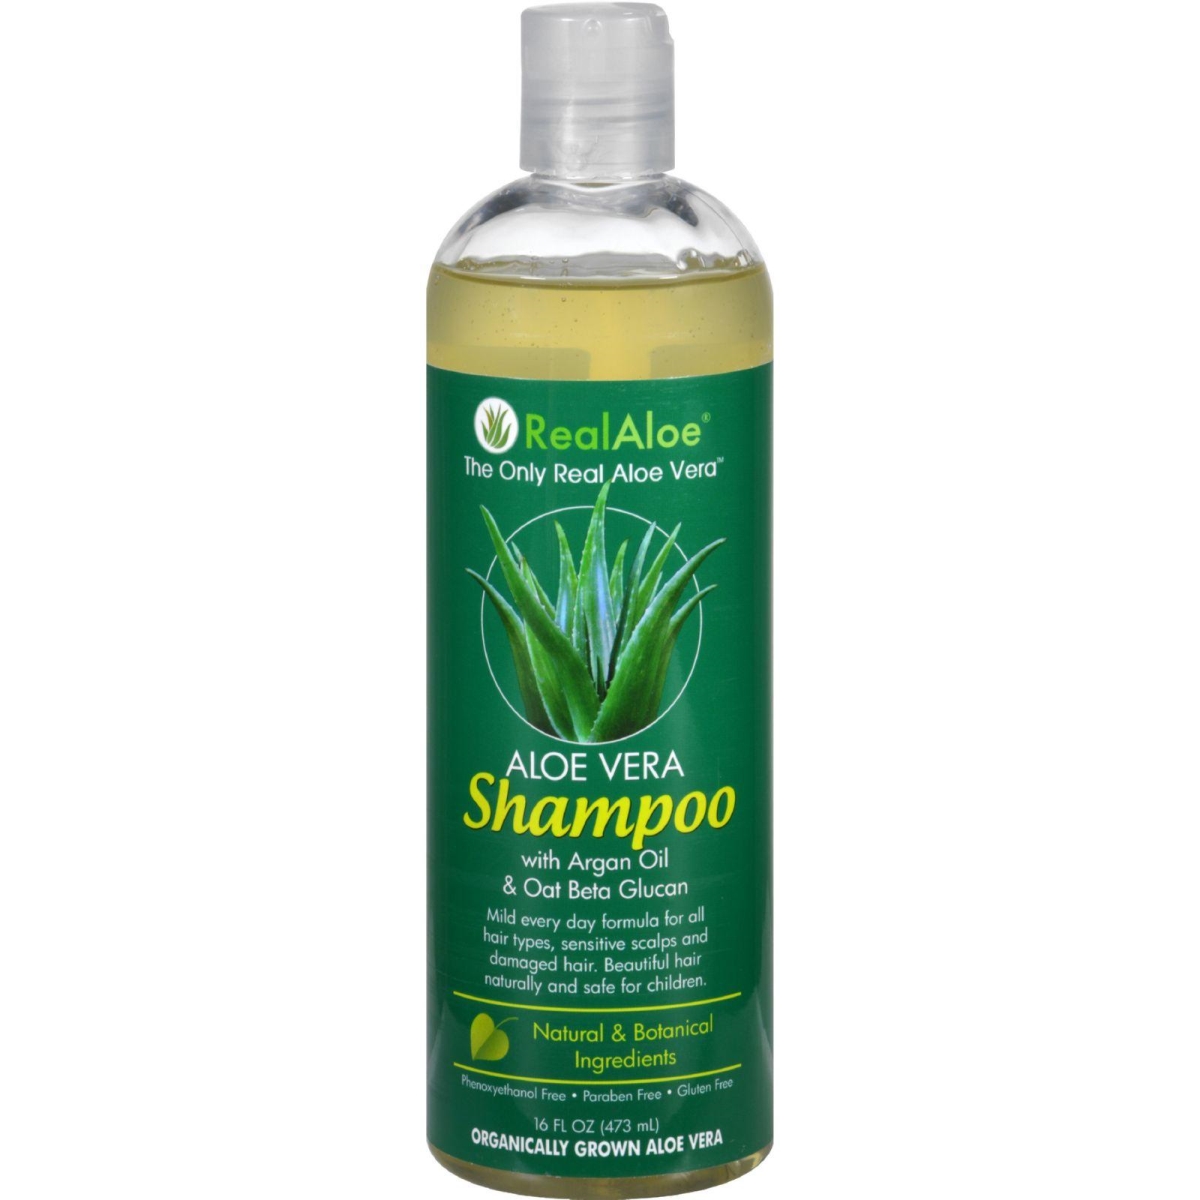 Hg1543792 16 Fl Oz Shampoo - Aloe Vera Mild